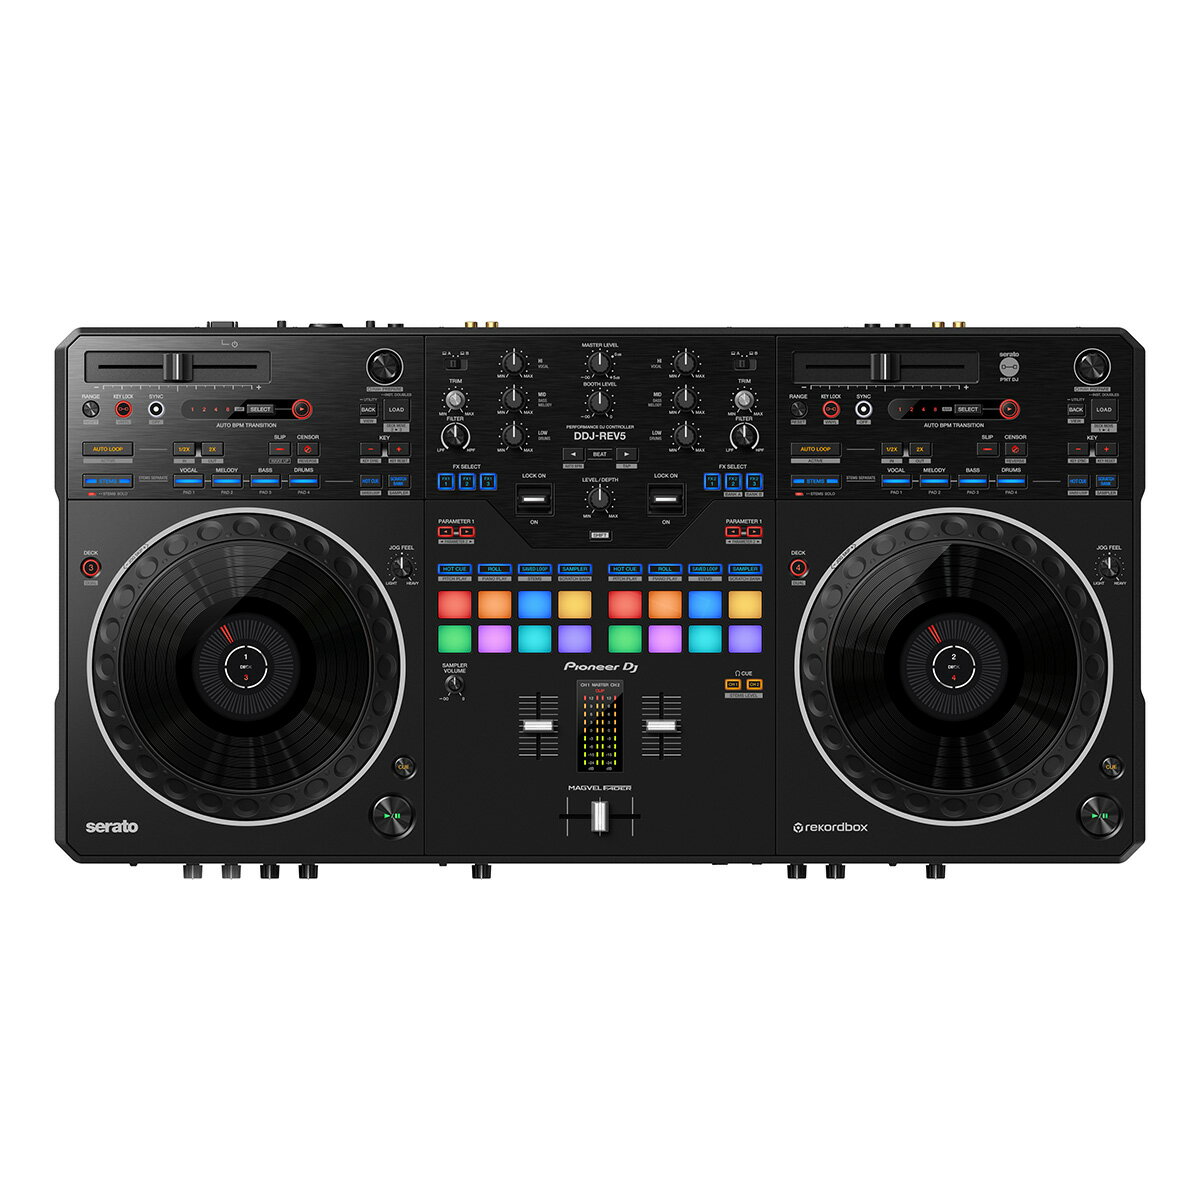 Pioneer DJ DDJ-REV5 Serato DJ Pro rekordbox対応 2chスクラッチスタイルDJコントローラー パイオニア